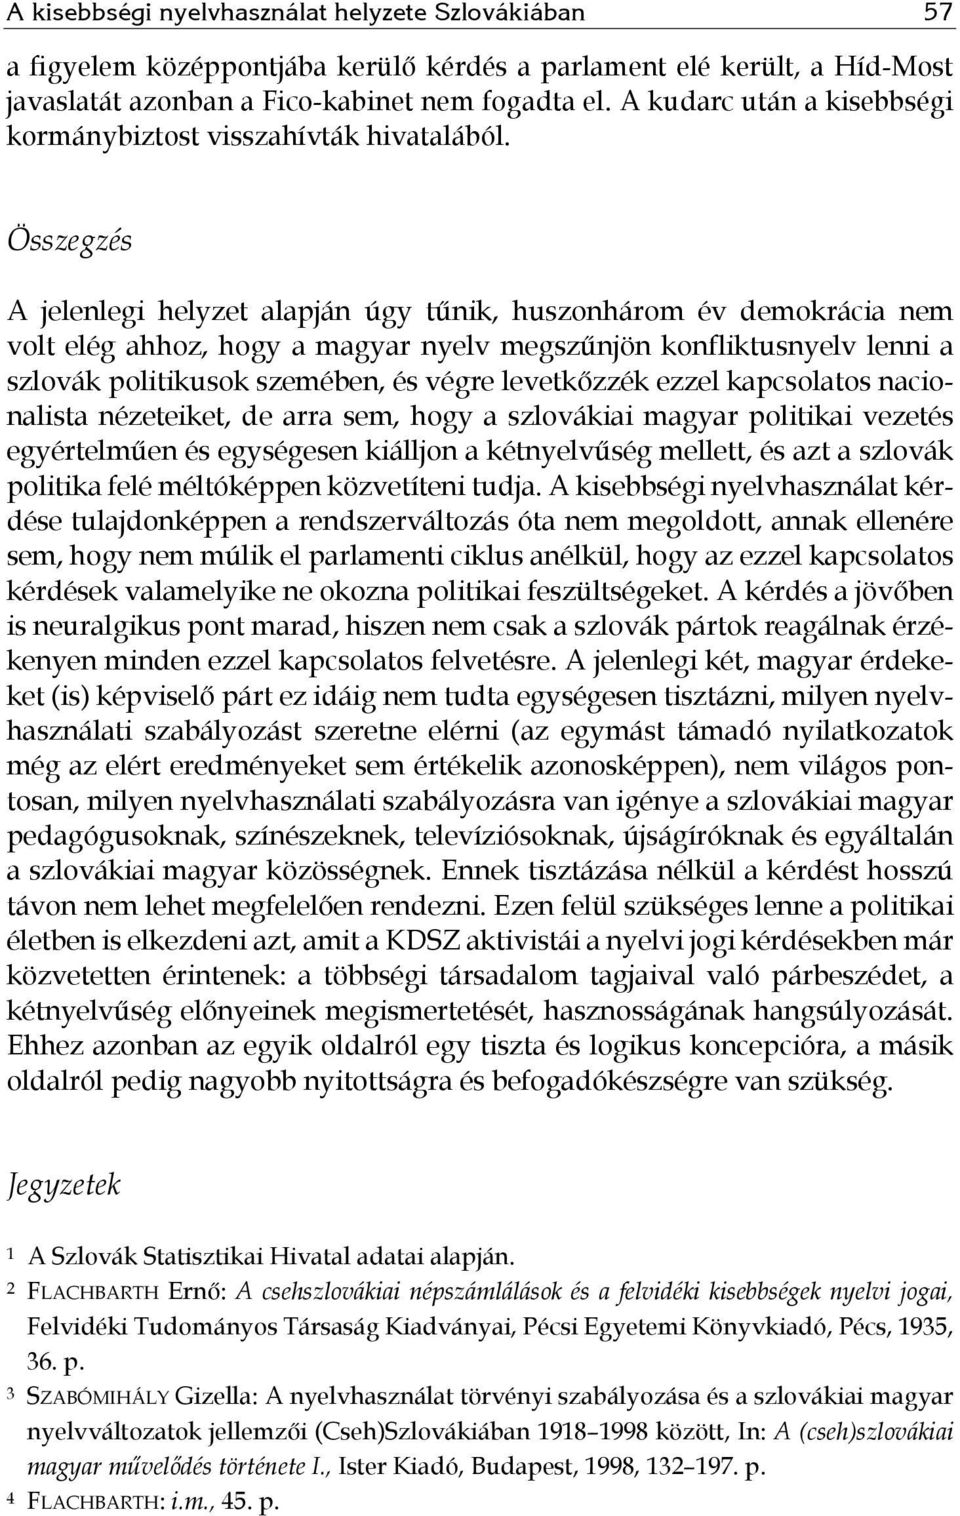 Összegzés A jelenlegi helyzet alapján úgy tűnik, huszonhárom év demokrácia nem volt elég ahhoz, hogy a magyar nyelv megszűnjön konfliktusnyelv lenni a szlovák politikusok szemében, és végre